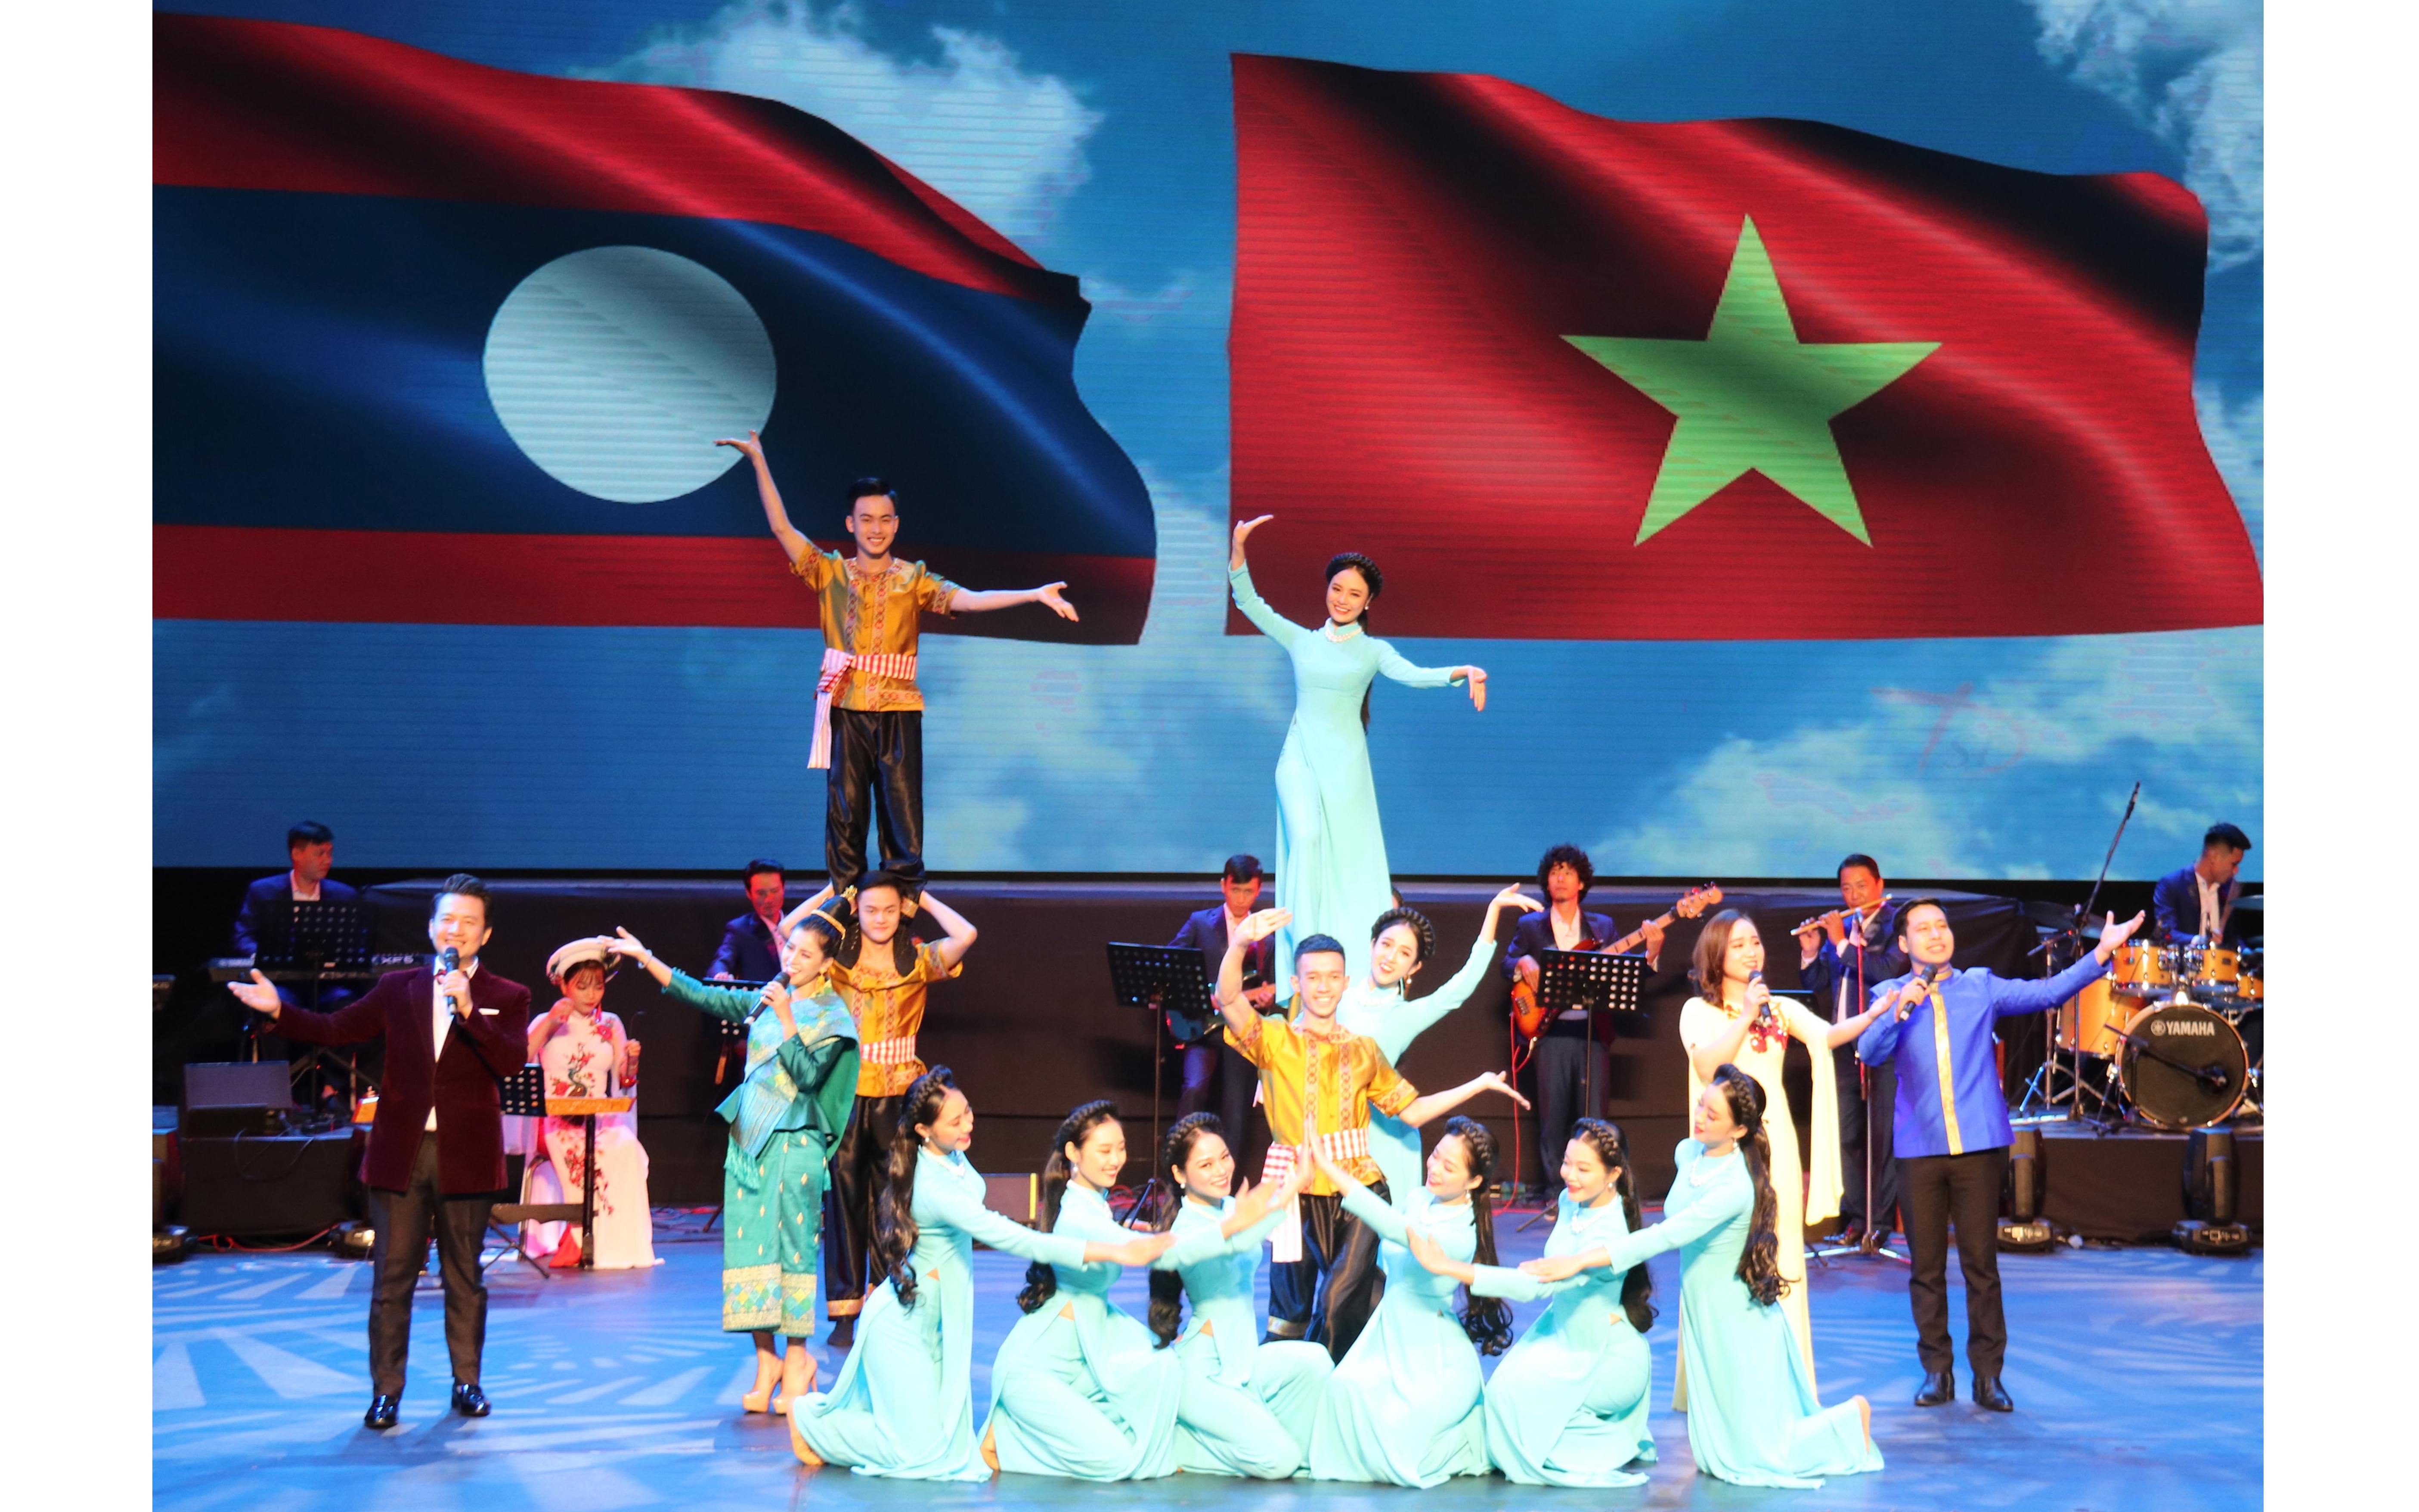 Tuần Văn hóa Việt Nam tại Lào: Cùng tìm hiểu và khám phá văn hóa đặc sắc của Việt Nam tại Tuần Văn hóa tại Lào. Buổi triển lãm, diễn thuyết và các tiết mục nghệ thuật đặc sắc sẽ mang đến cho bạn những trải nghiệm tuyệt vời về văn hóa và tinh thần đoàn kết.